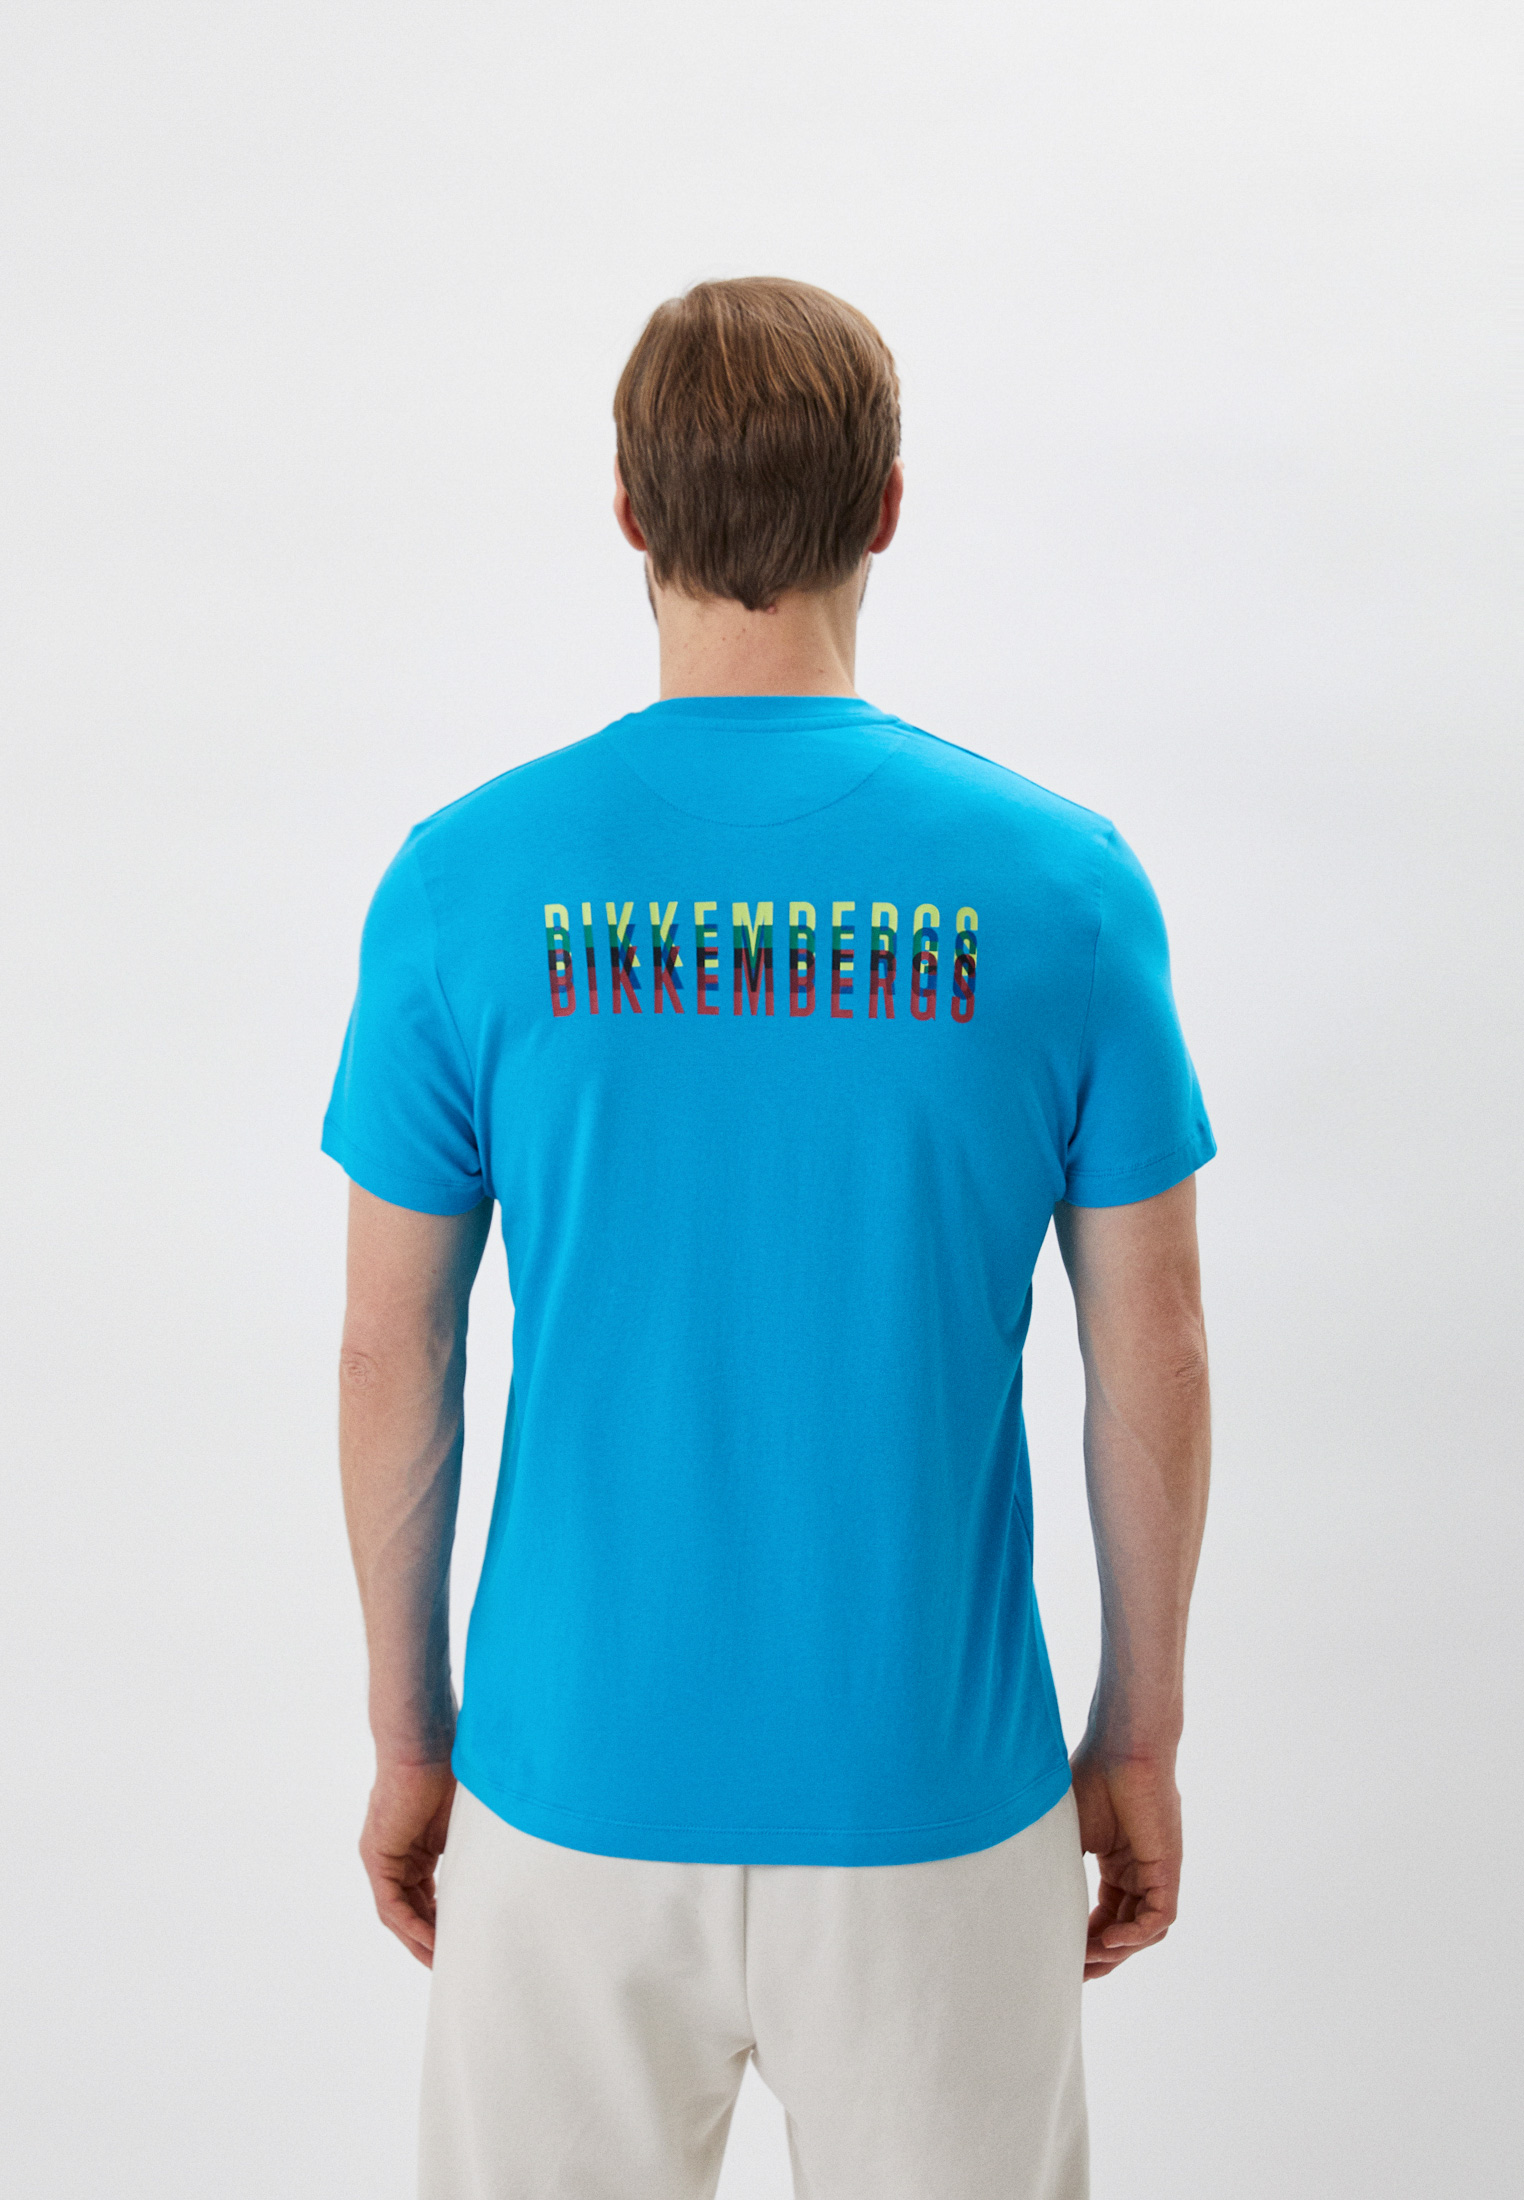 Мужская футболка Bikkembergs (Биккембергс) C 4 101 64 E 1811: изображение 3